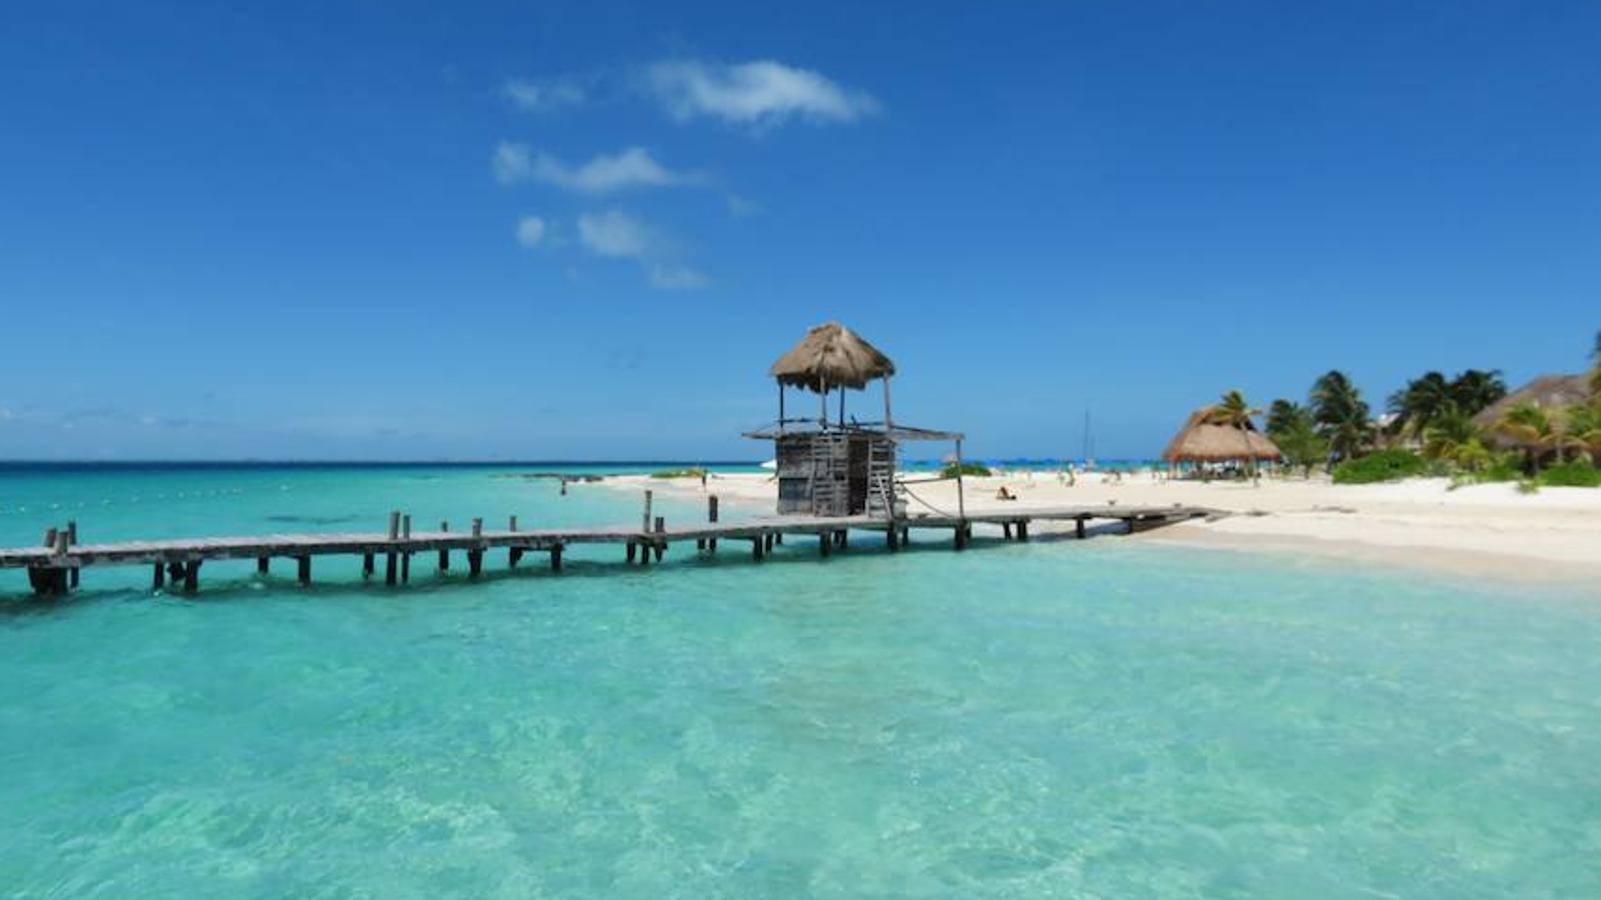 Ubicada a 13 kilómetros de la costa de Cancún y comparada por algunos visitantes con el cielo, la Playa Norte es el mejor destino de México para aquellos amantes de aguas claras y tibias. En su caso, es la última playa situada en el TOP 10.